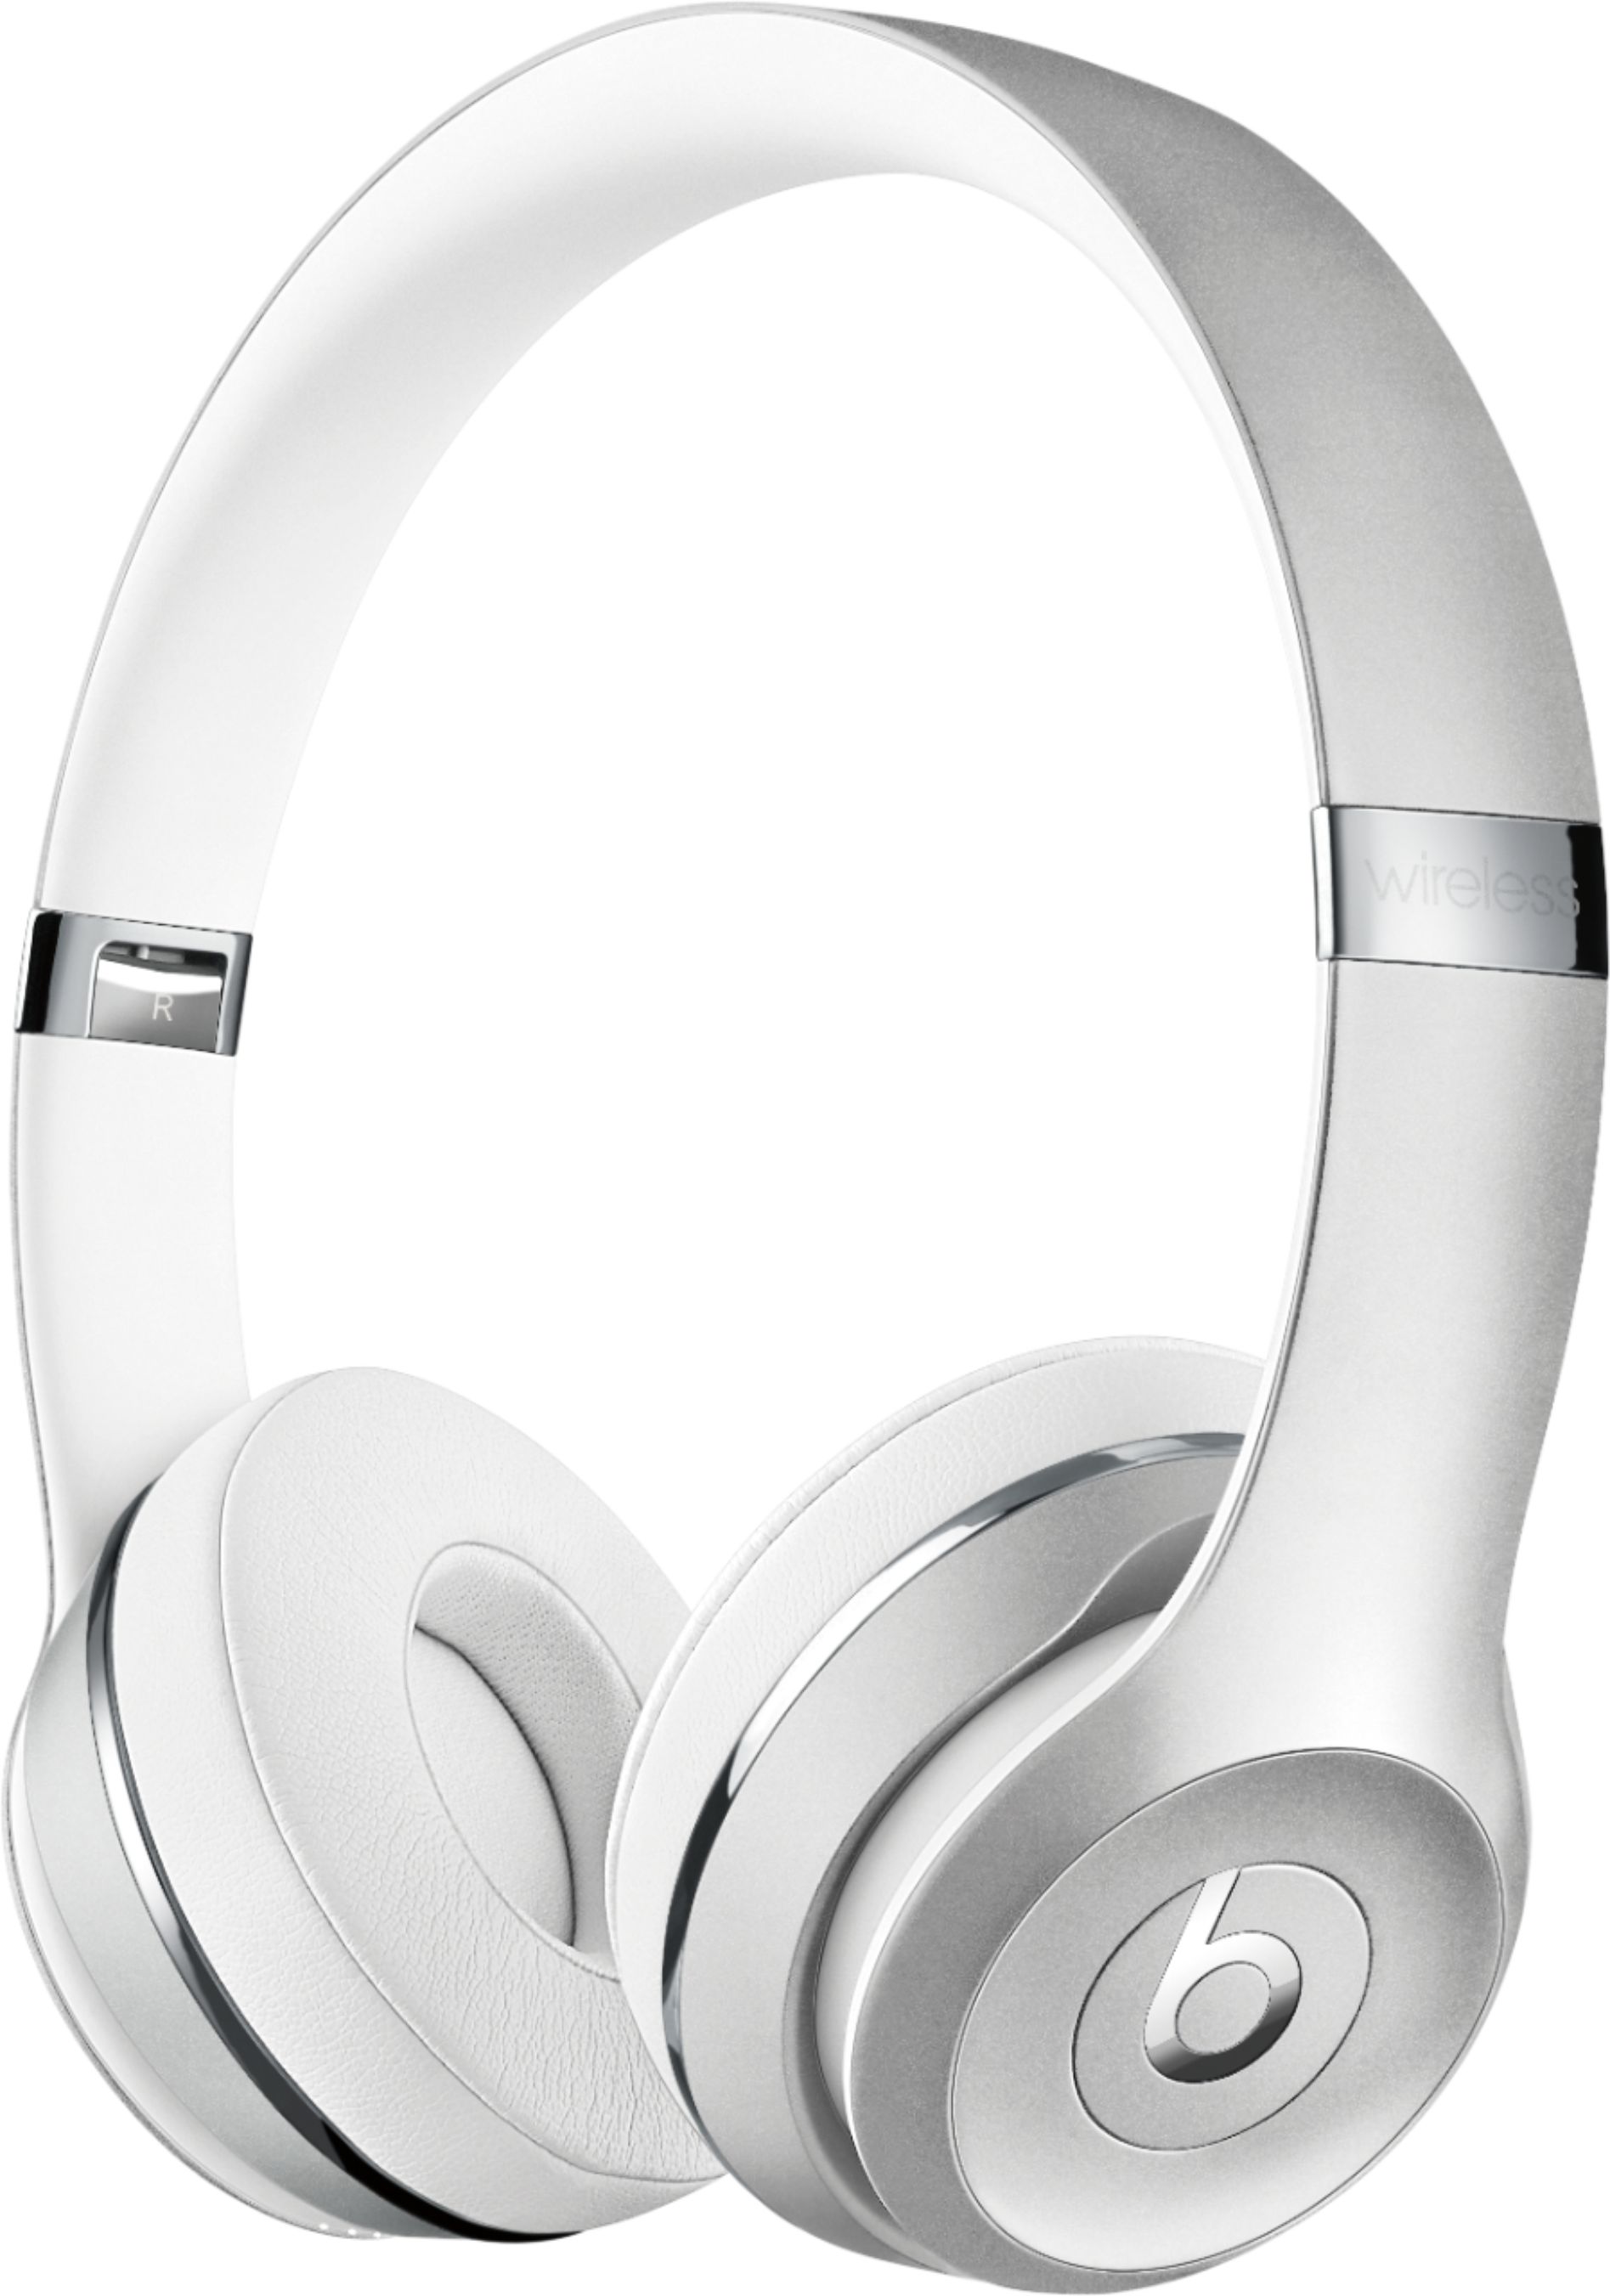 オーディオ機器 ヘッドフォン Beats by Dr. Dre Solo³ The Beats Icon Collection Wireless On-Ear 